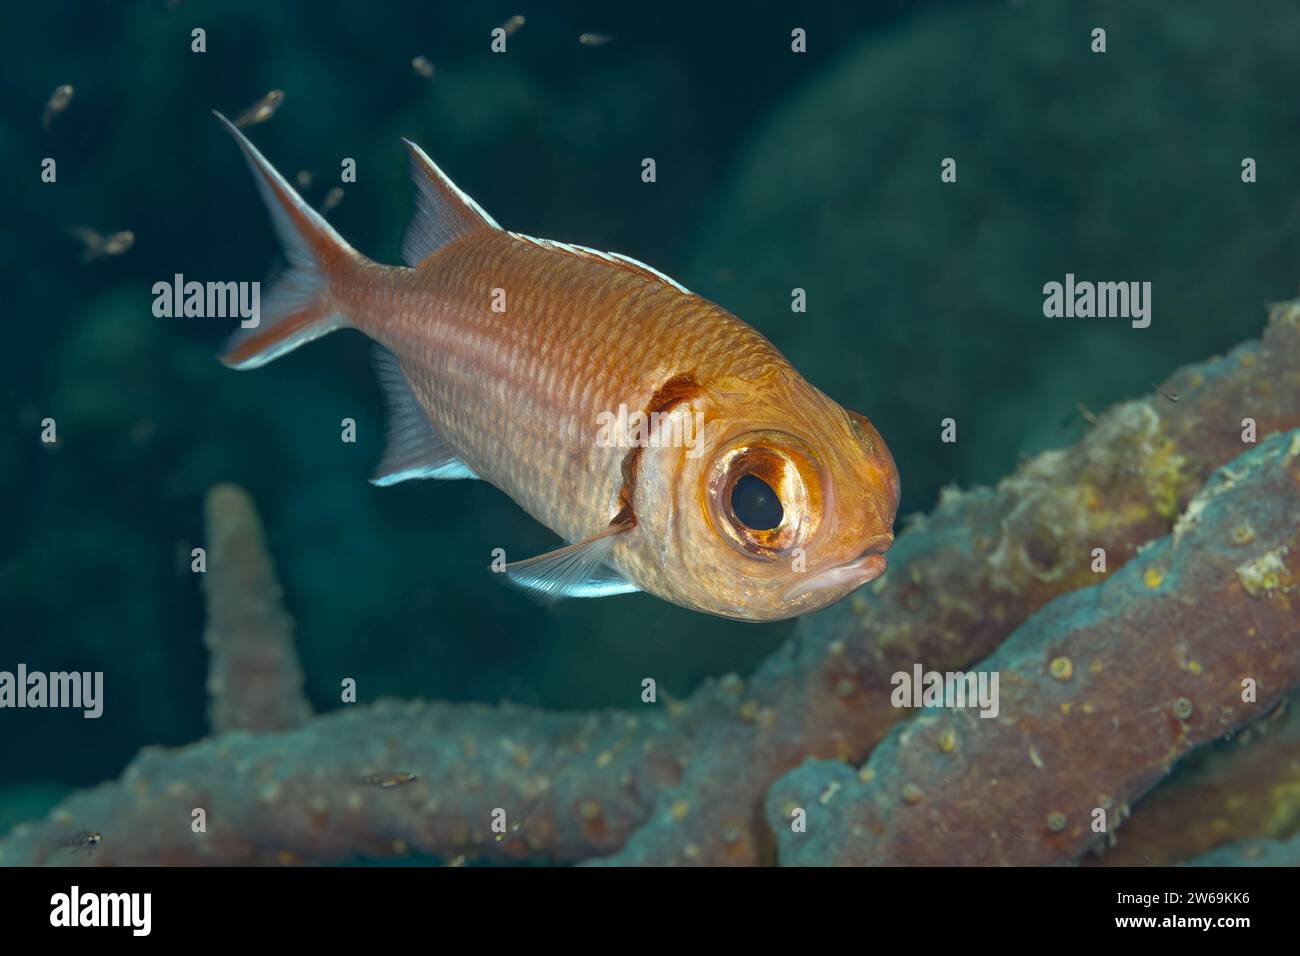 Ein kleiner, einsamer Fisch mit einem glänzenden Auge schwimmt anmutig in der Nähe des Meeresbodens zwischen den rostigen Überresten einer untergetauchten Struktur. Stockfoto